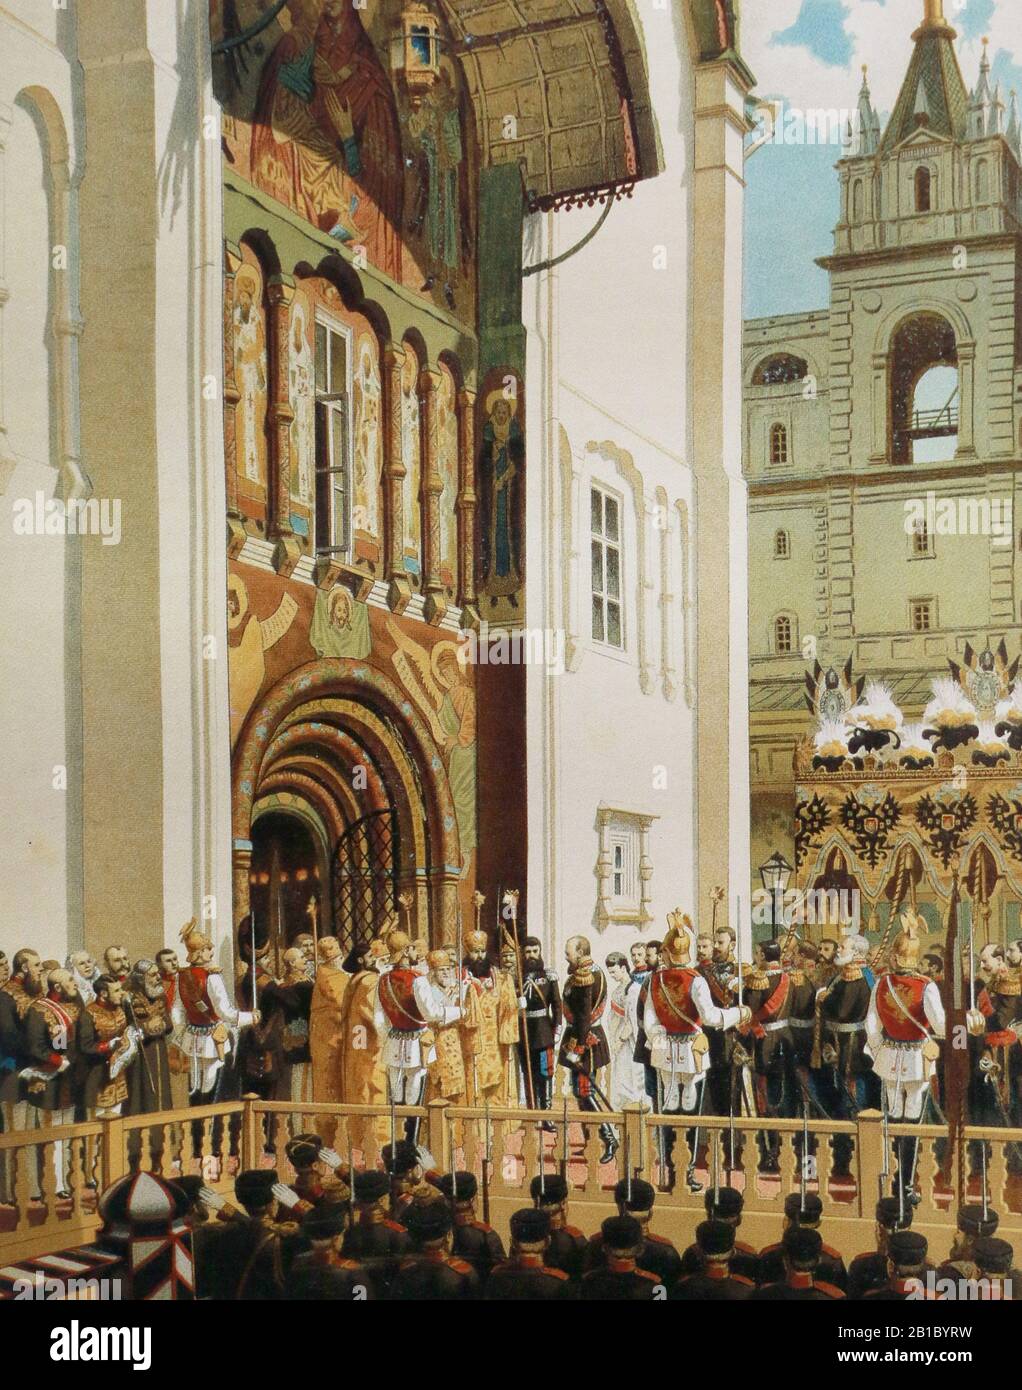 L'empereur russe Alexandre III Alexandrovitch et l'impératrice Maria Fedorovna à l'entrée de la cathédrale de l'Assomption du Kremlin de Moscou, se rendant au couronnement le 15 mai 1883. Peinture de V. Polenov, XIXe siècle. Banque D'Images